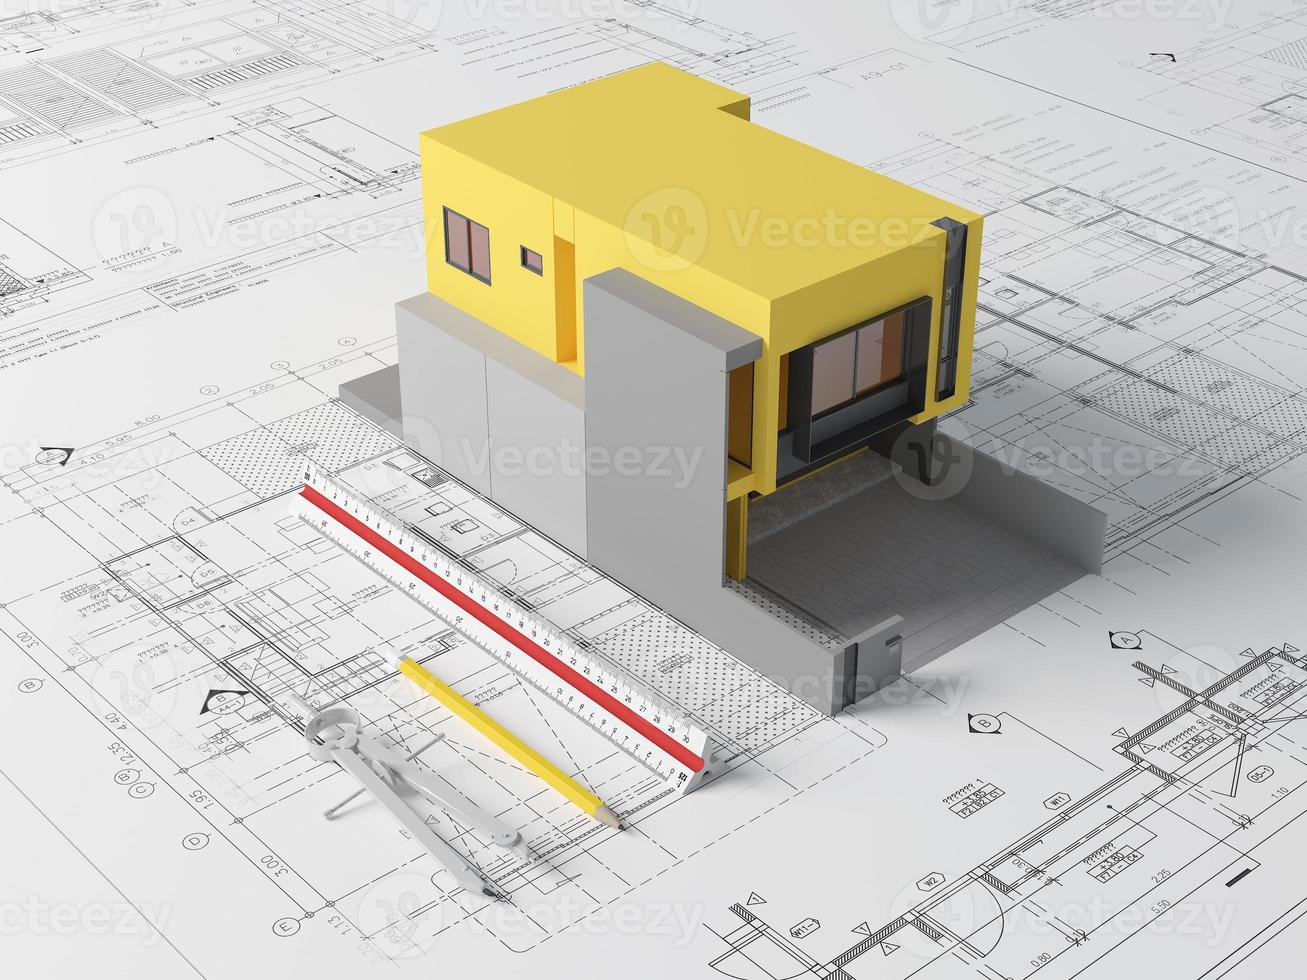 planos de planta e modelo de casa amarela com régua de escala, bússola e lápis.conceito de arquiteto. renderização em 3d foto